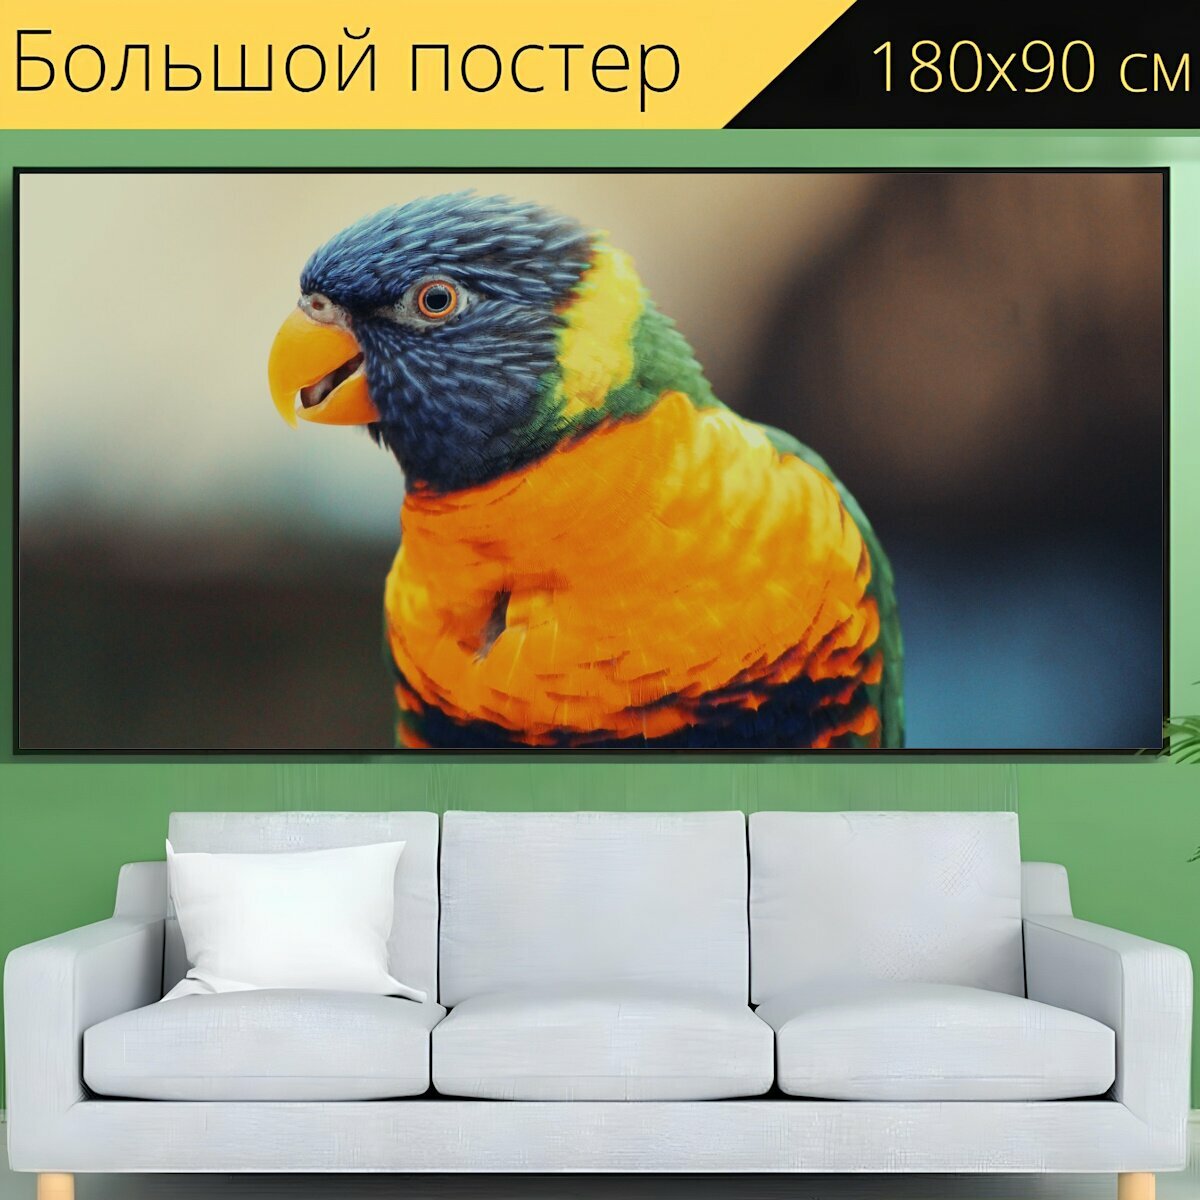 Большой постер "Мускусный лорикет попугай красочный" 180 x 90 см. для интерьера